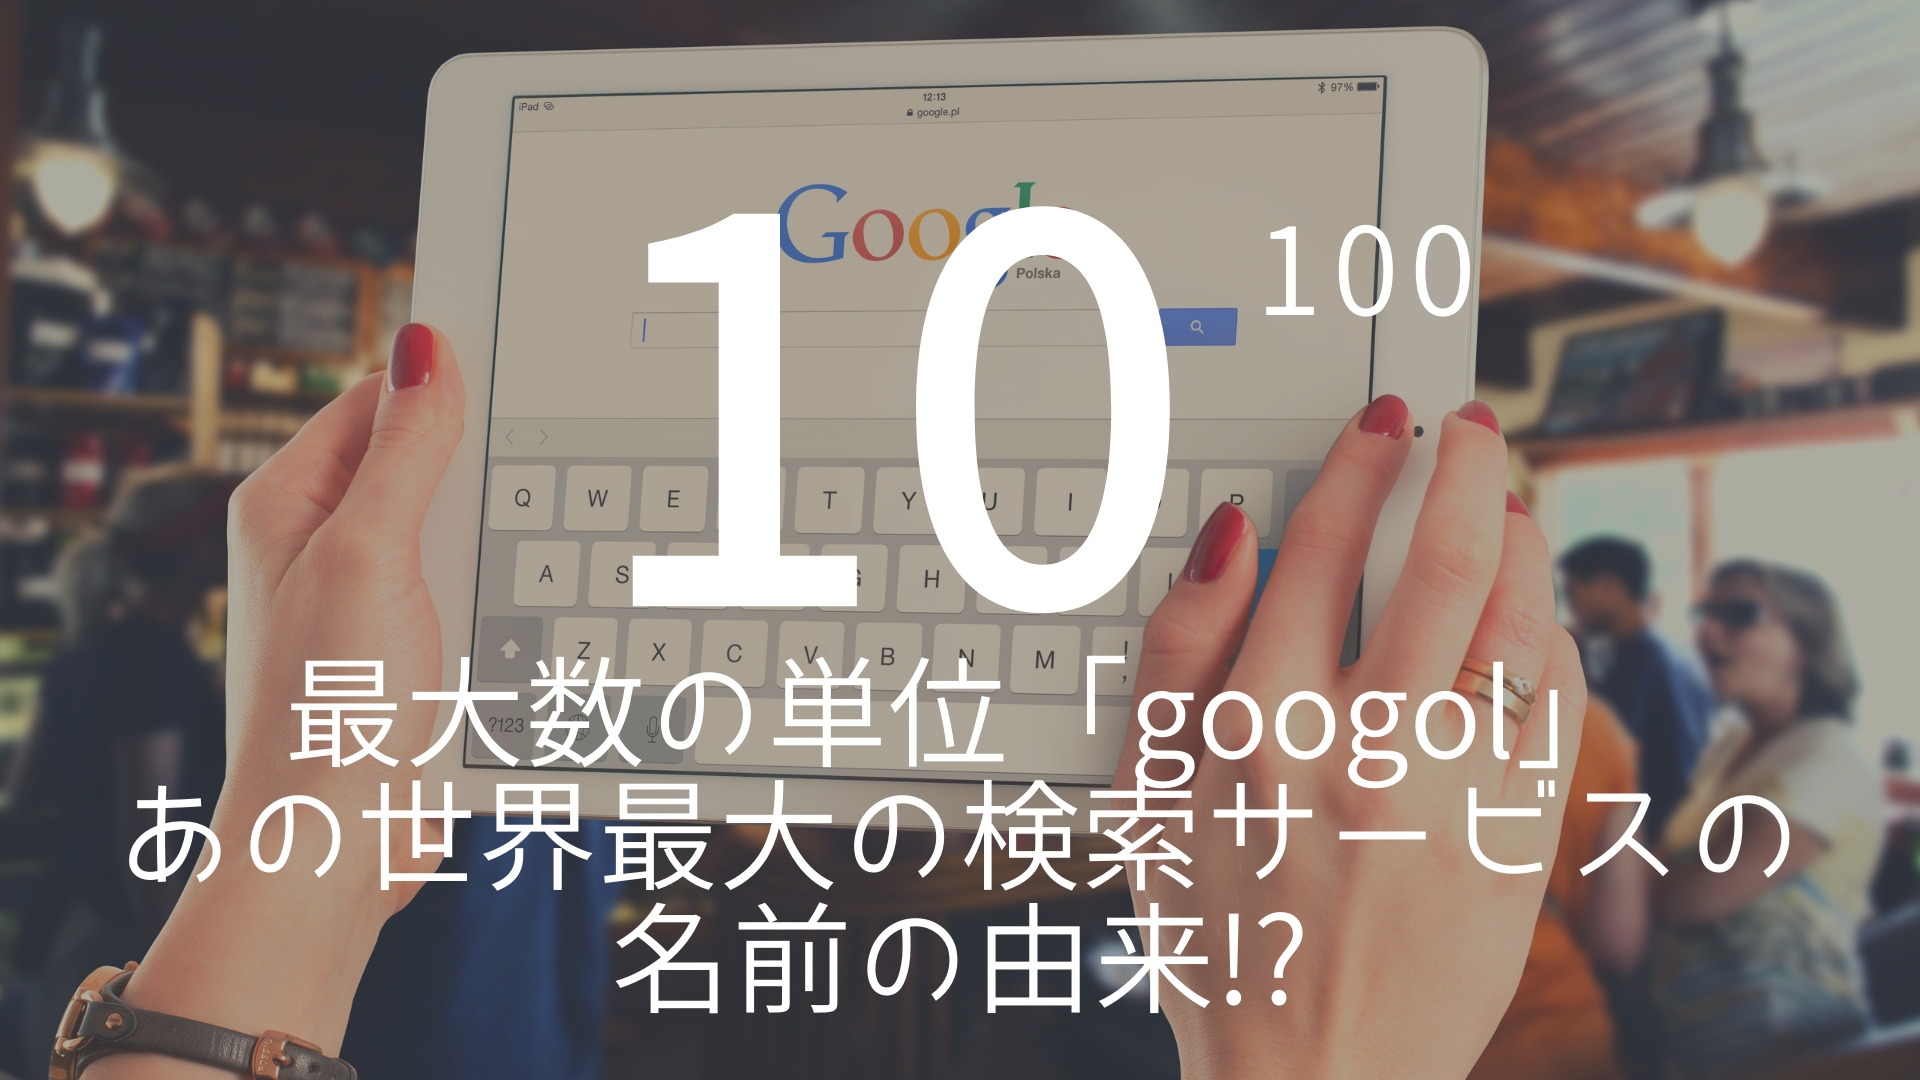 10の100乗 最大数の単位 Googol あの世界最大の検索サービスの由来 朝礼スピーチのネタ帳ブログ 1分間スピーチ